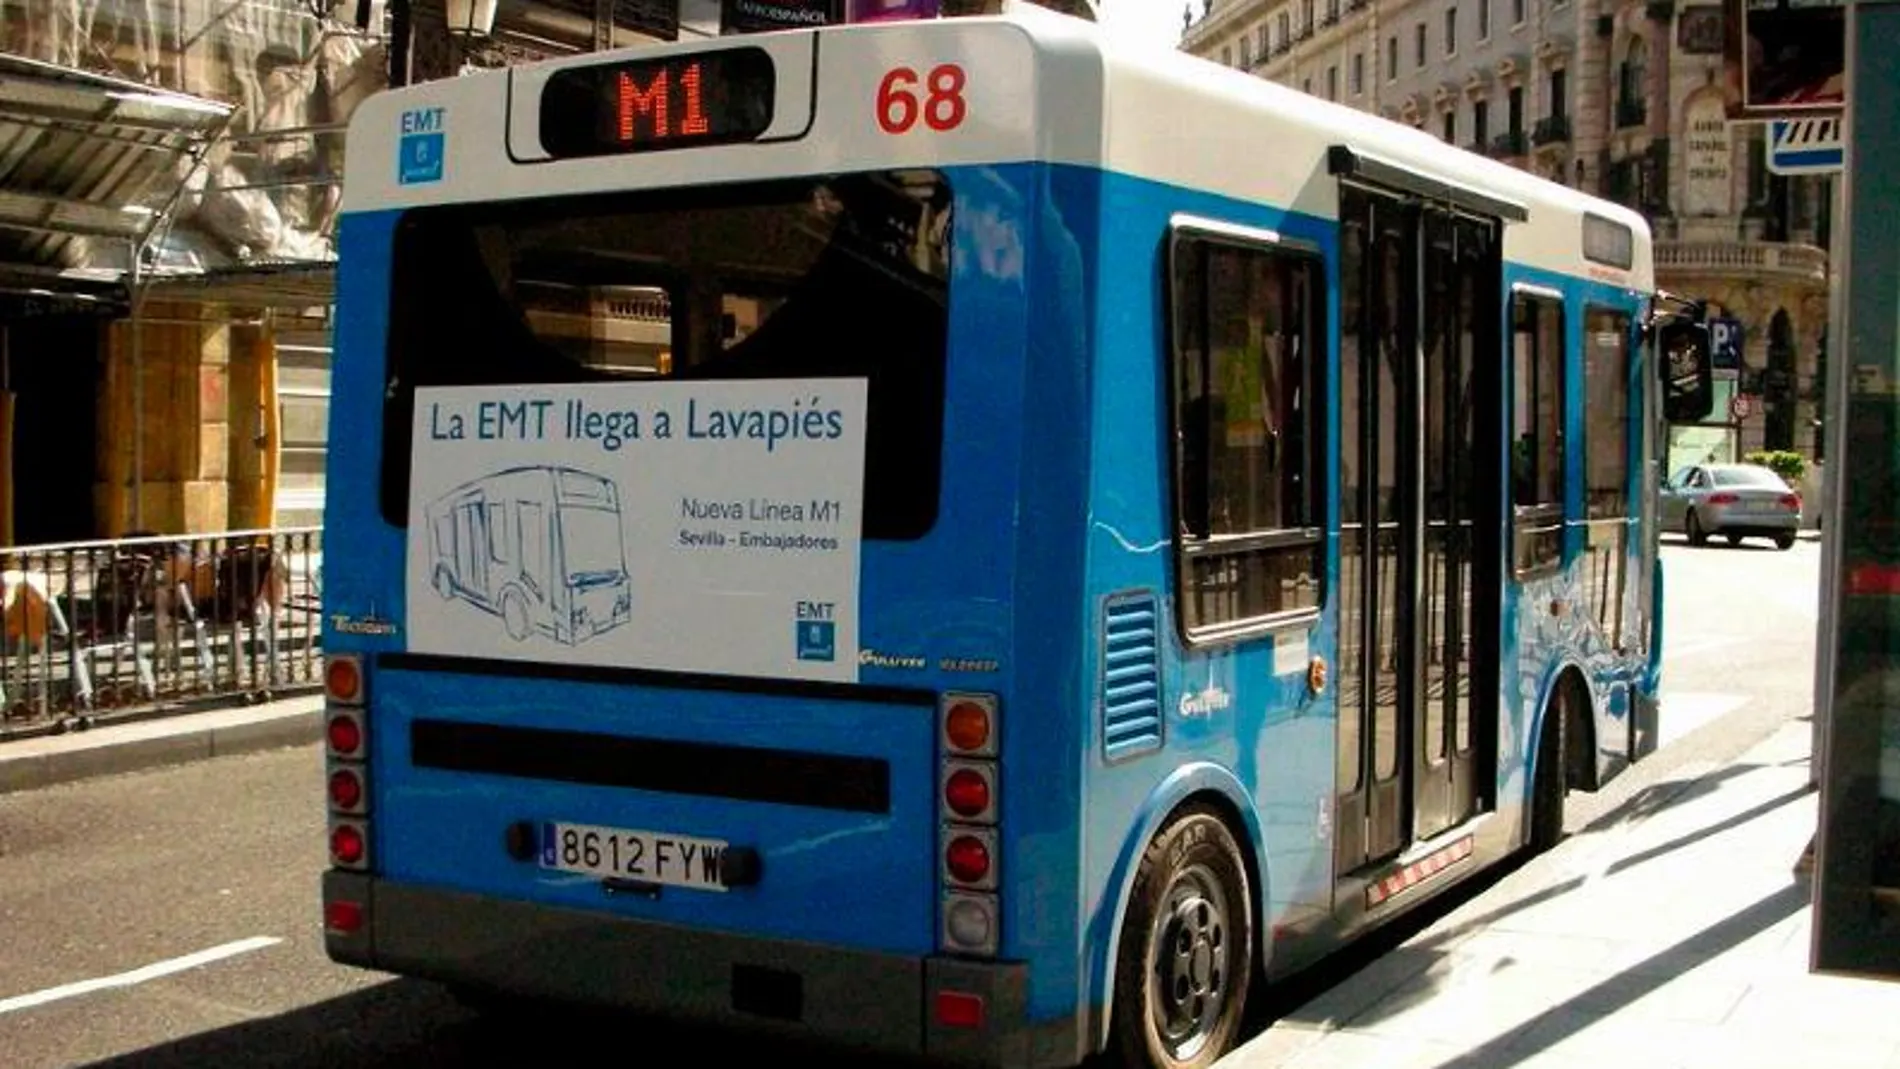 Los hechos tuvieron lugar en un autobús la línea M1 de la EMT, que cubre el trayecto entre Embajadores y Sevilla.